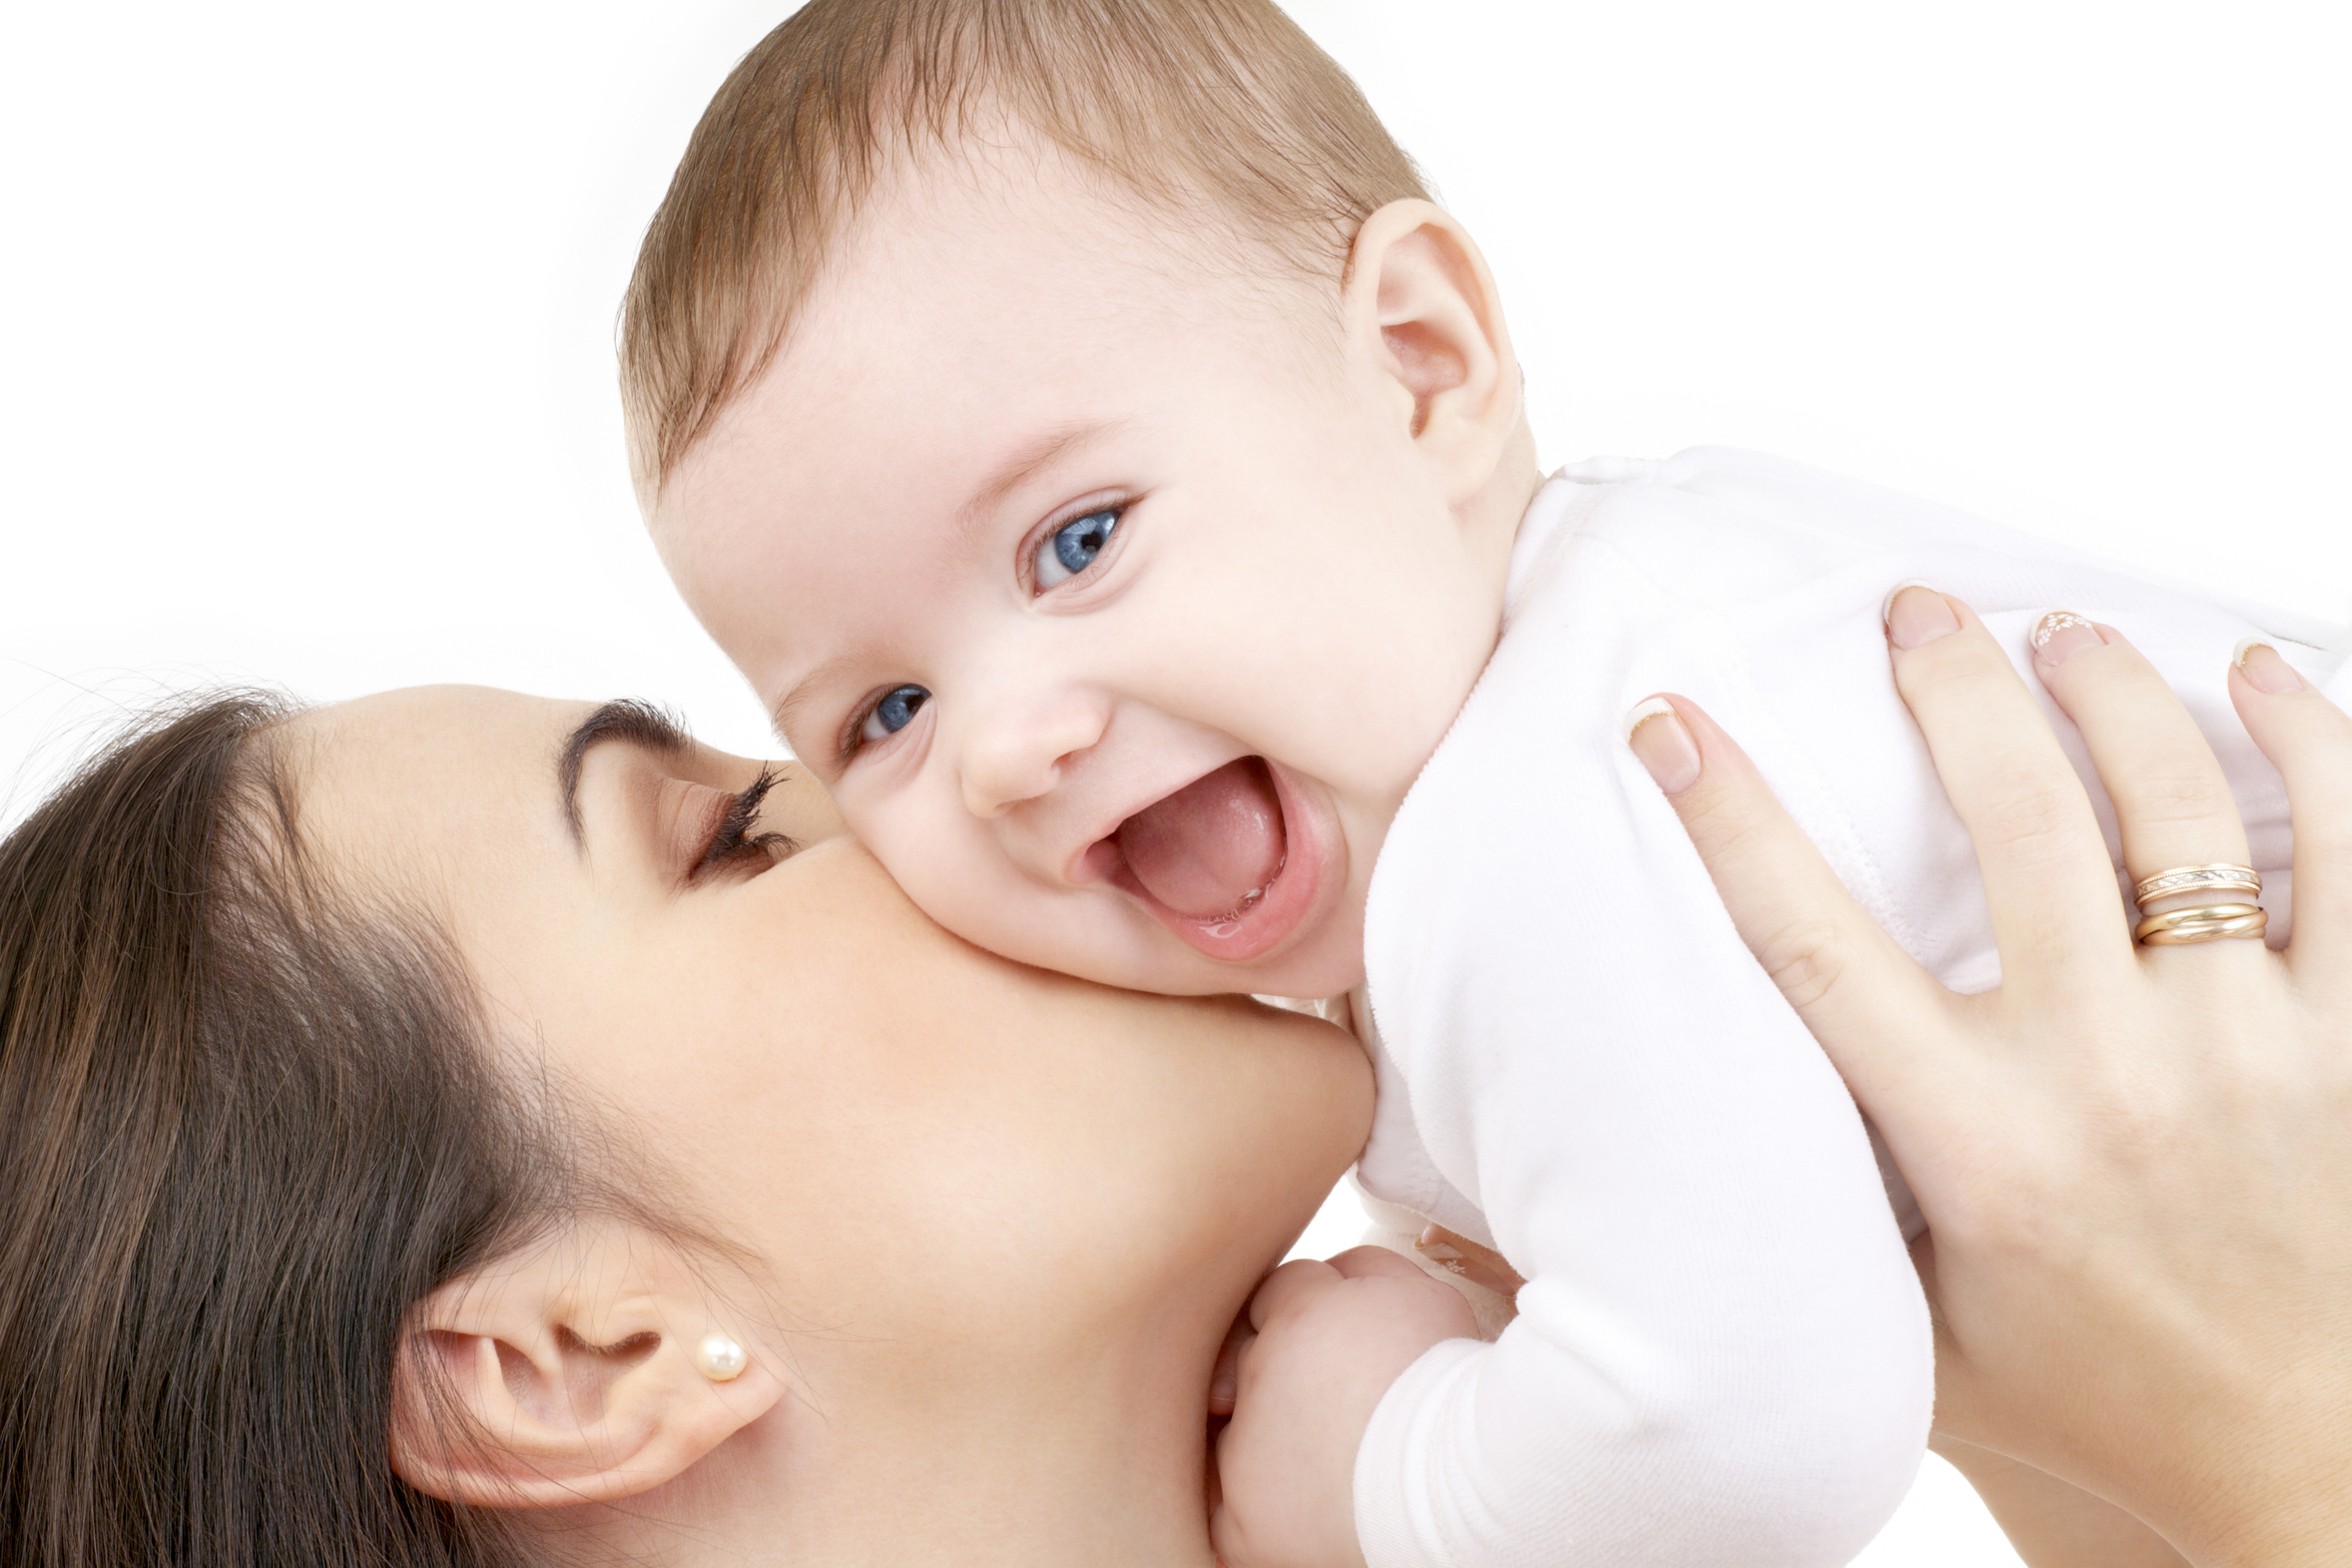 Témoignage d'une assistante maternelle : « Quand la joie d'être maman se  heurte à la réalité » | lesprosdelapetiteenfance